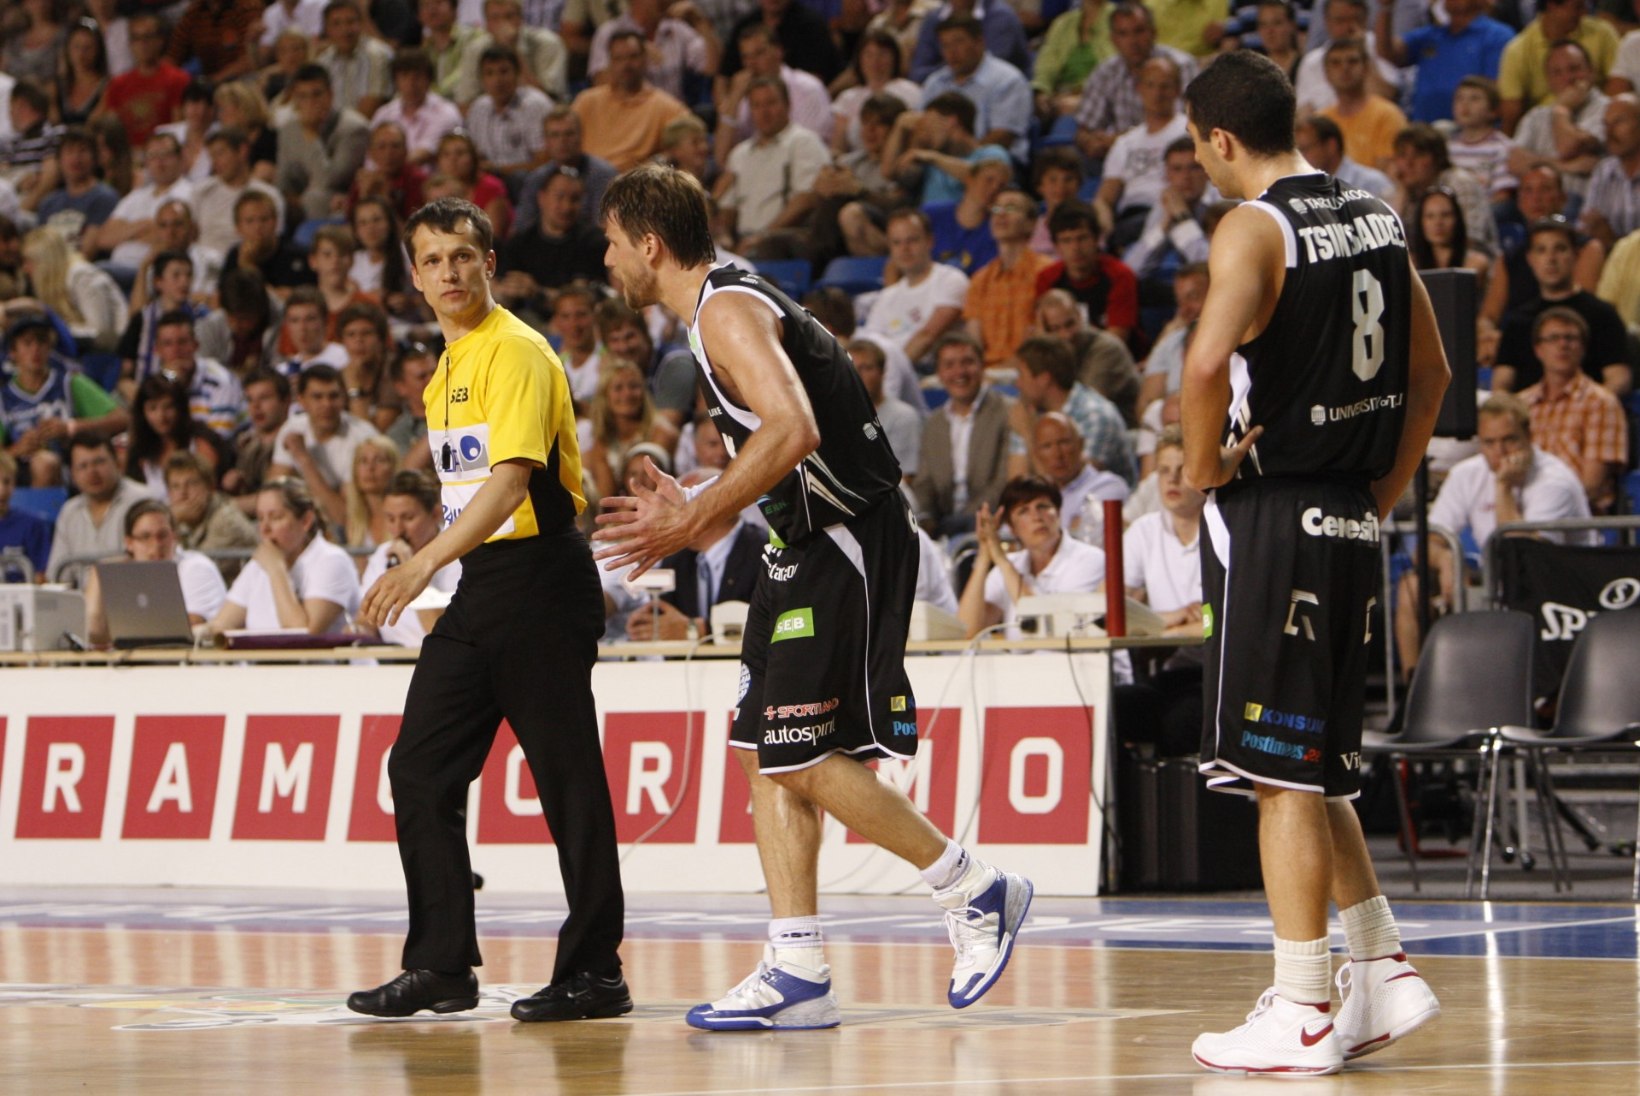 Aare Halliko kinnitati Atso Matsalu asemel FIBA rahvuslikuks instruktoriks